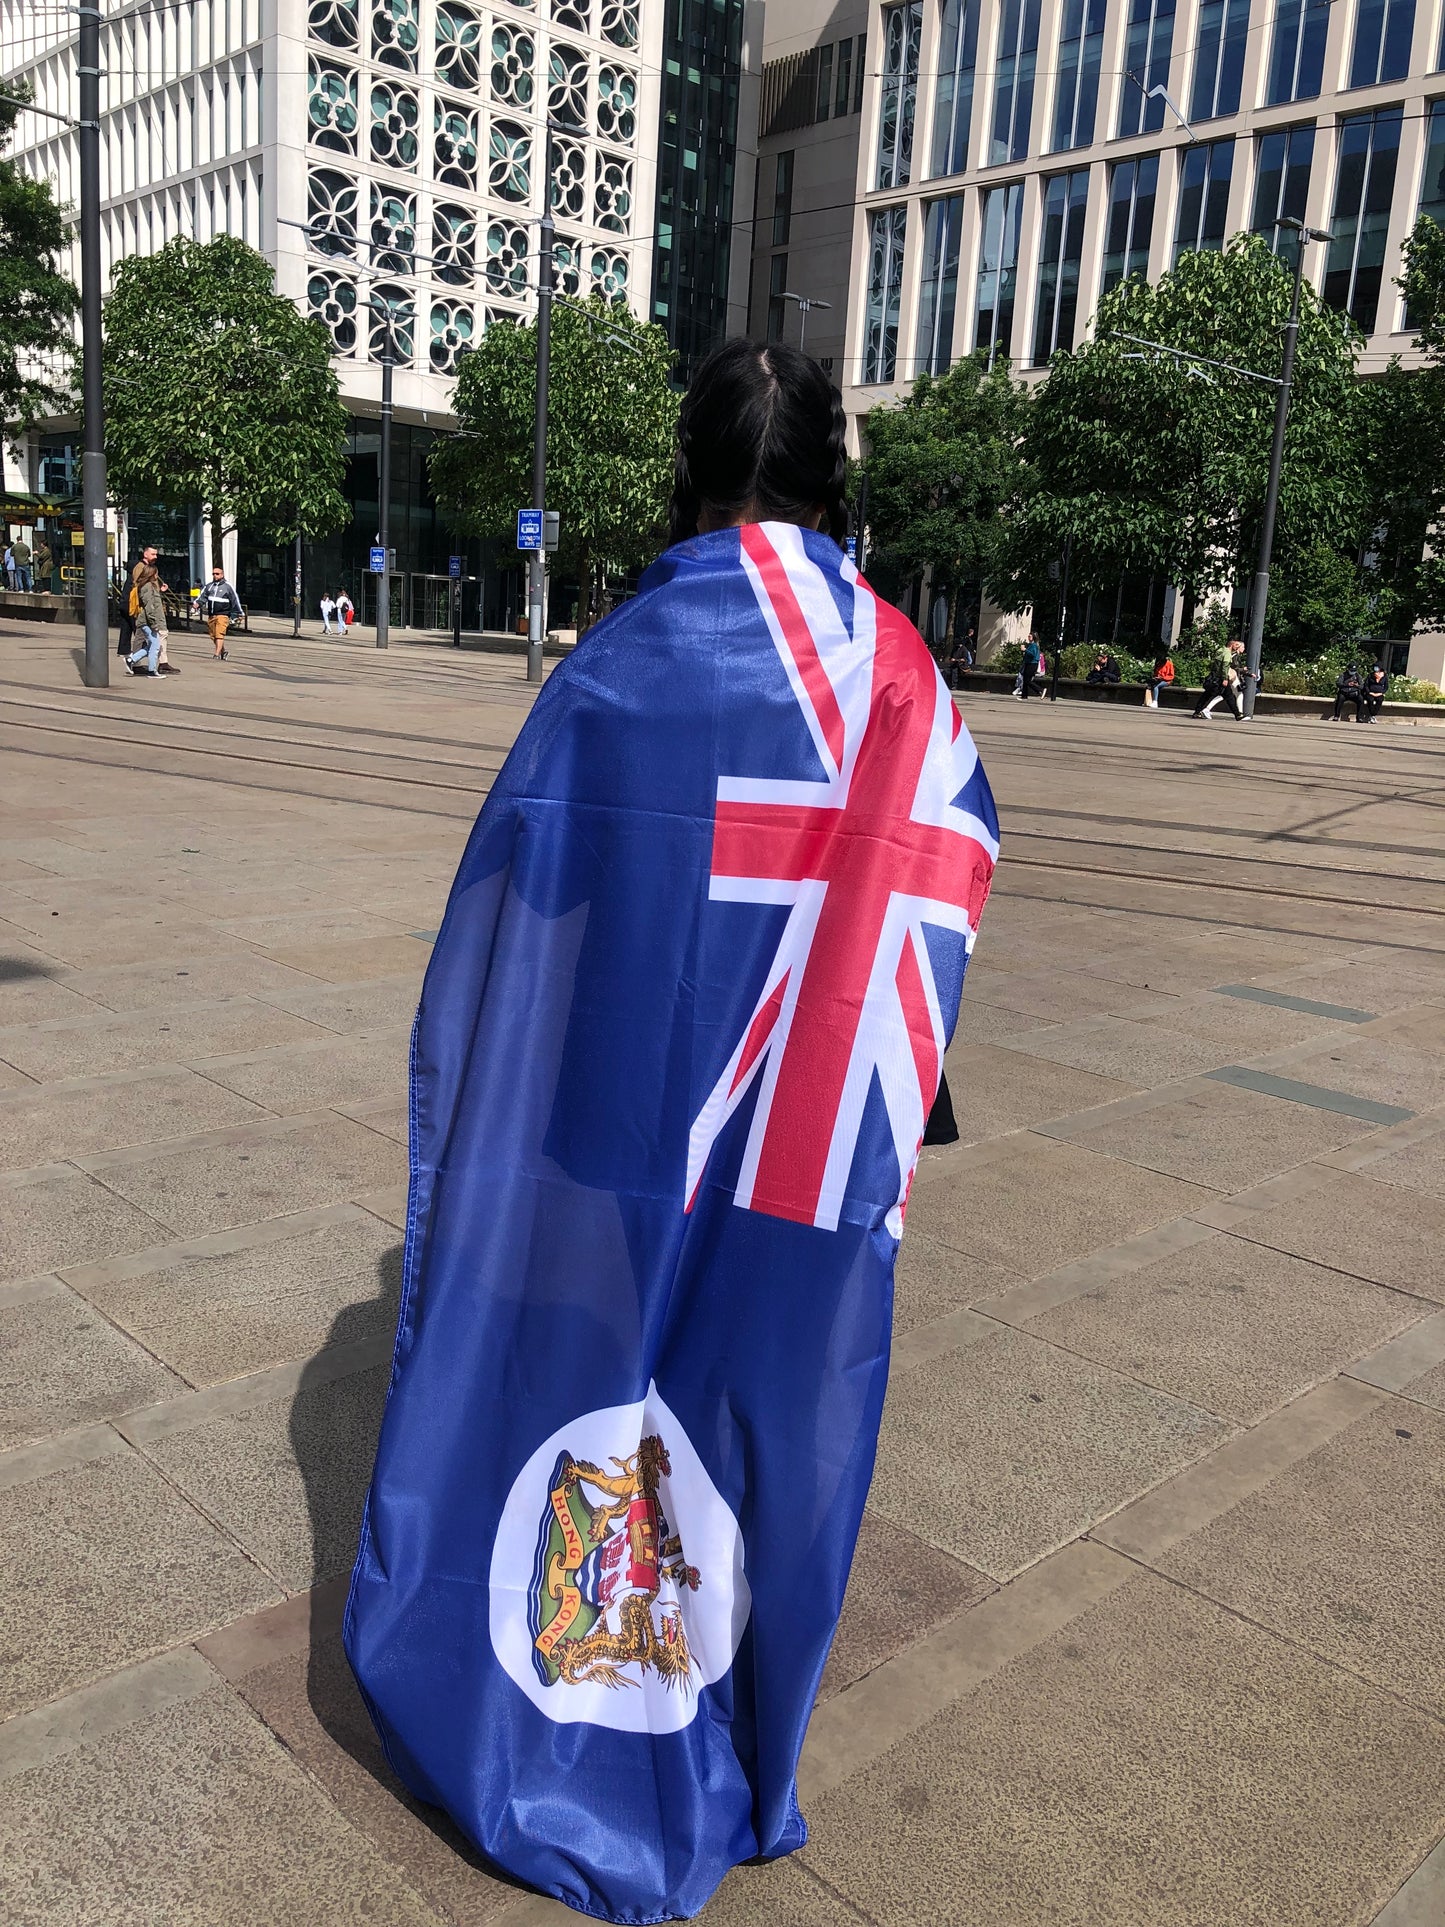 香港旗 Hong Kong Flag Standard Outdoor 🇬🇧 Made in Britain